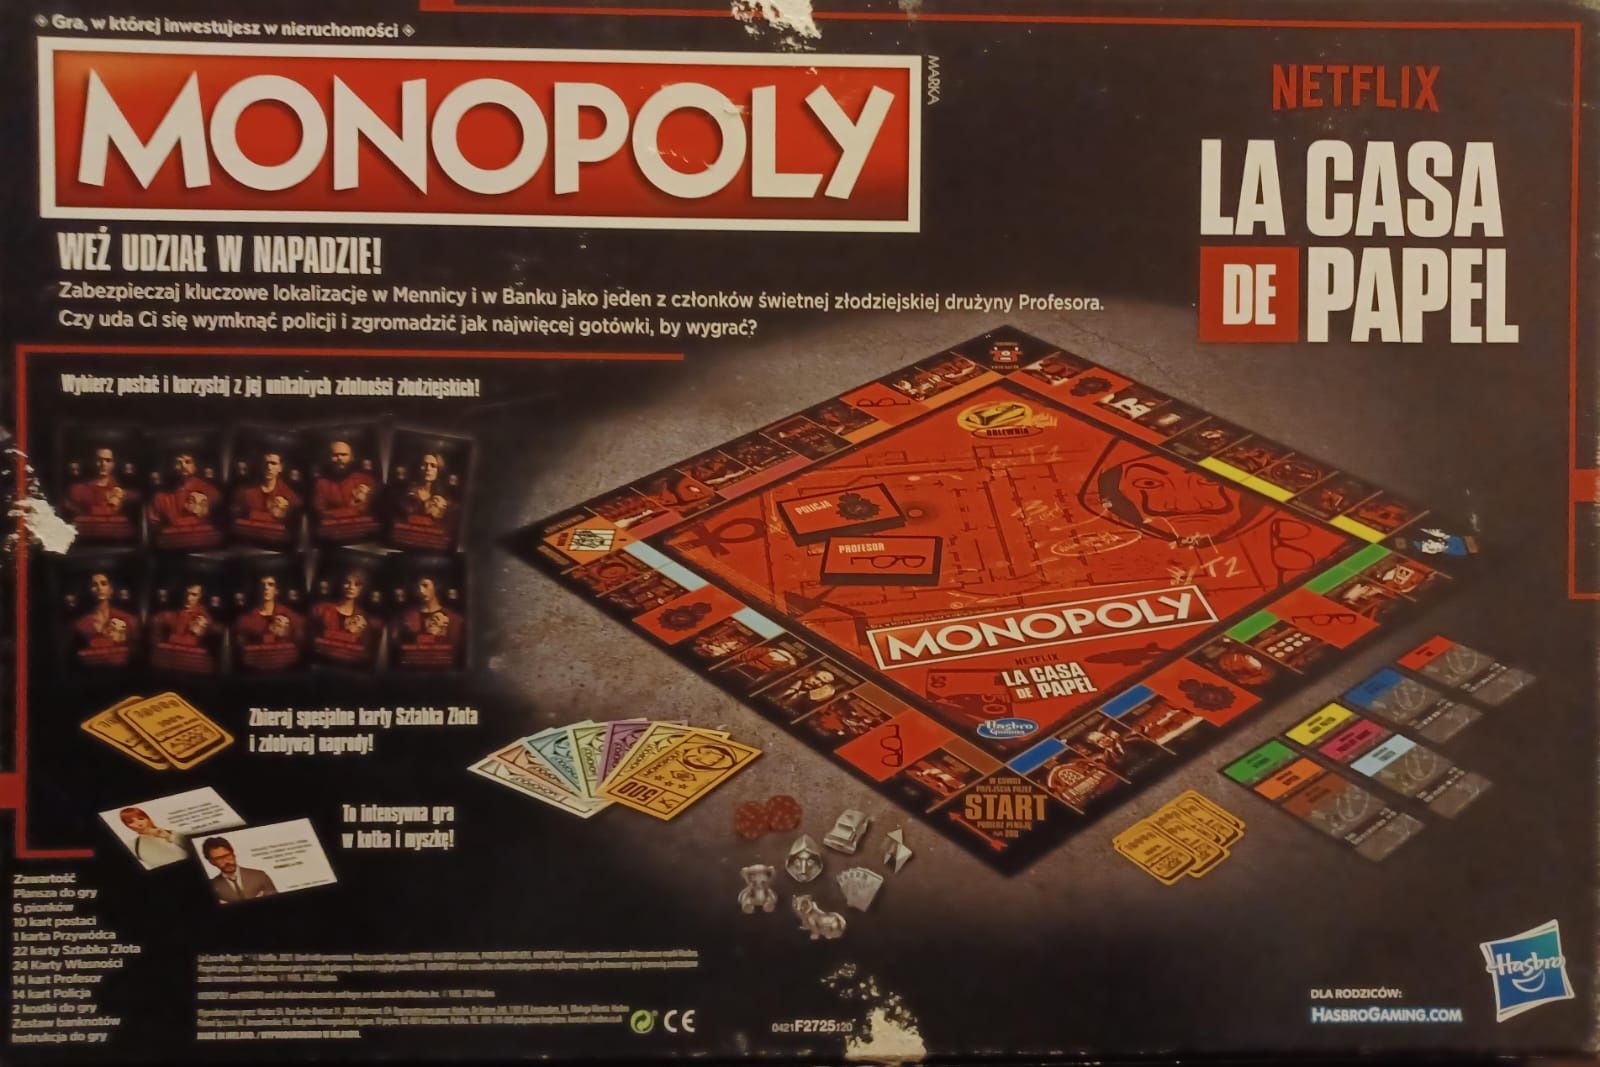 Monopoly Dom z Papieru